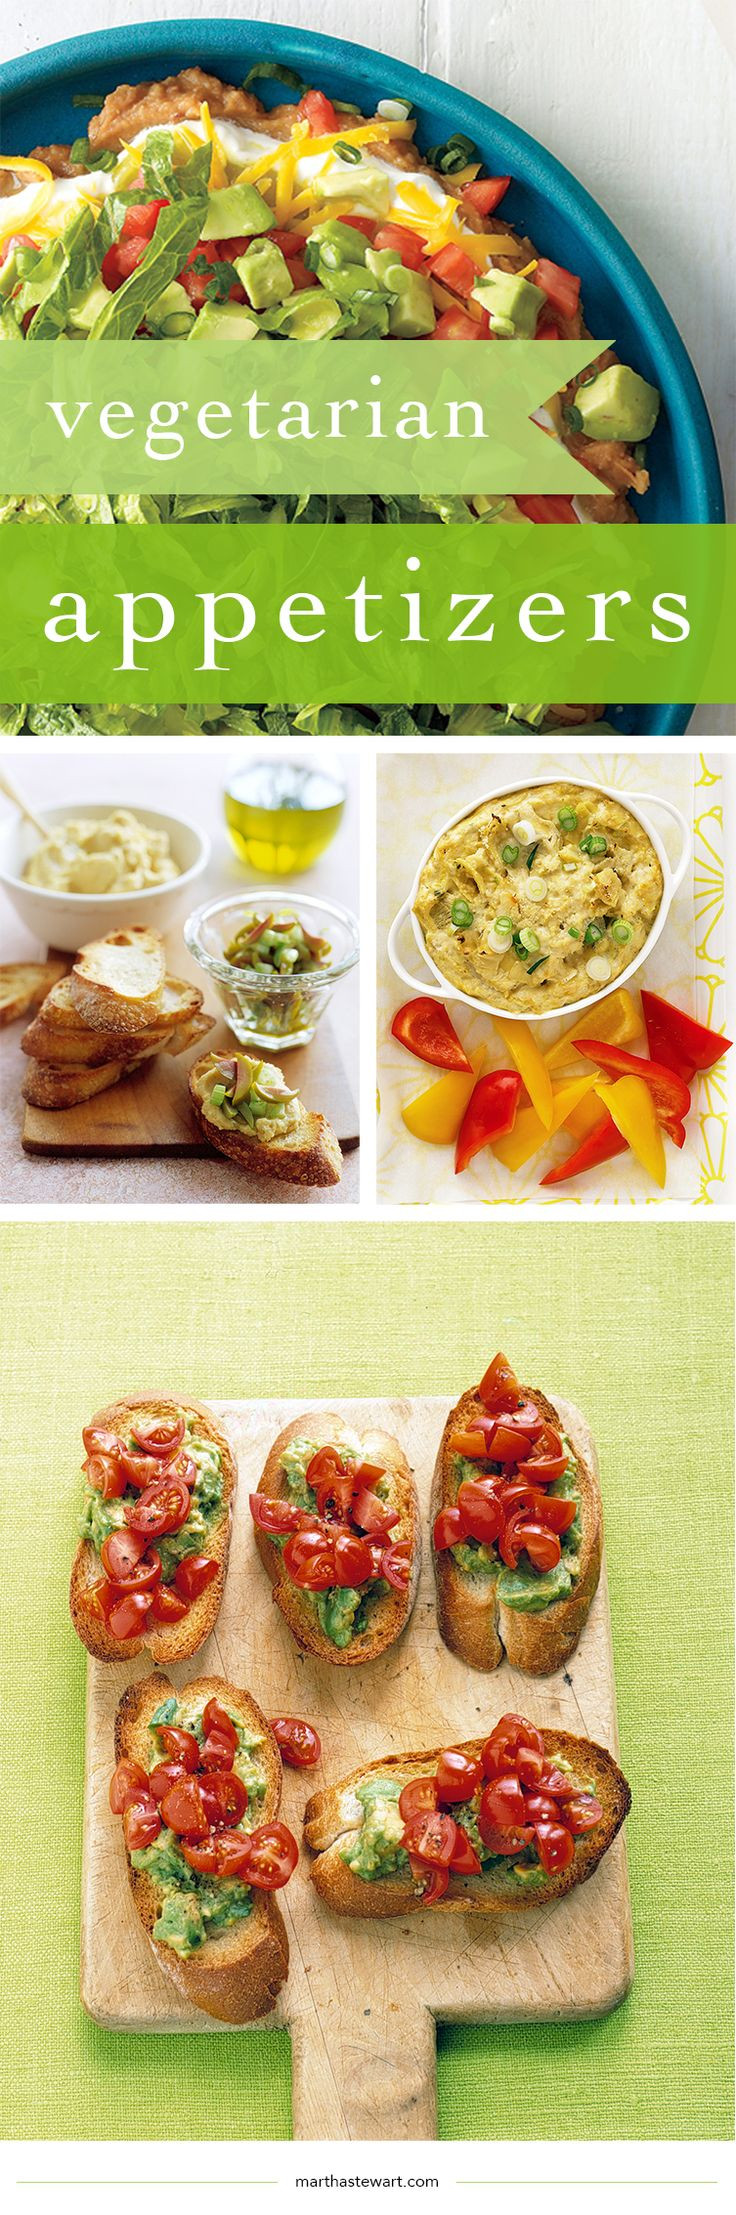 Vegetarian Appetizers Pinterest
 Best 25 Elegant dinner party ideas on Pinterest